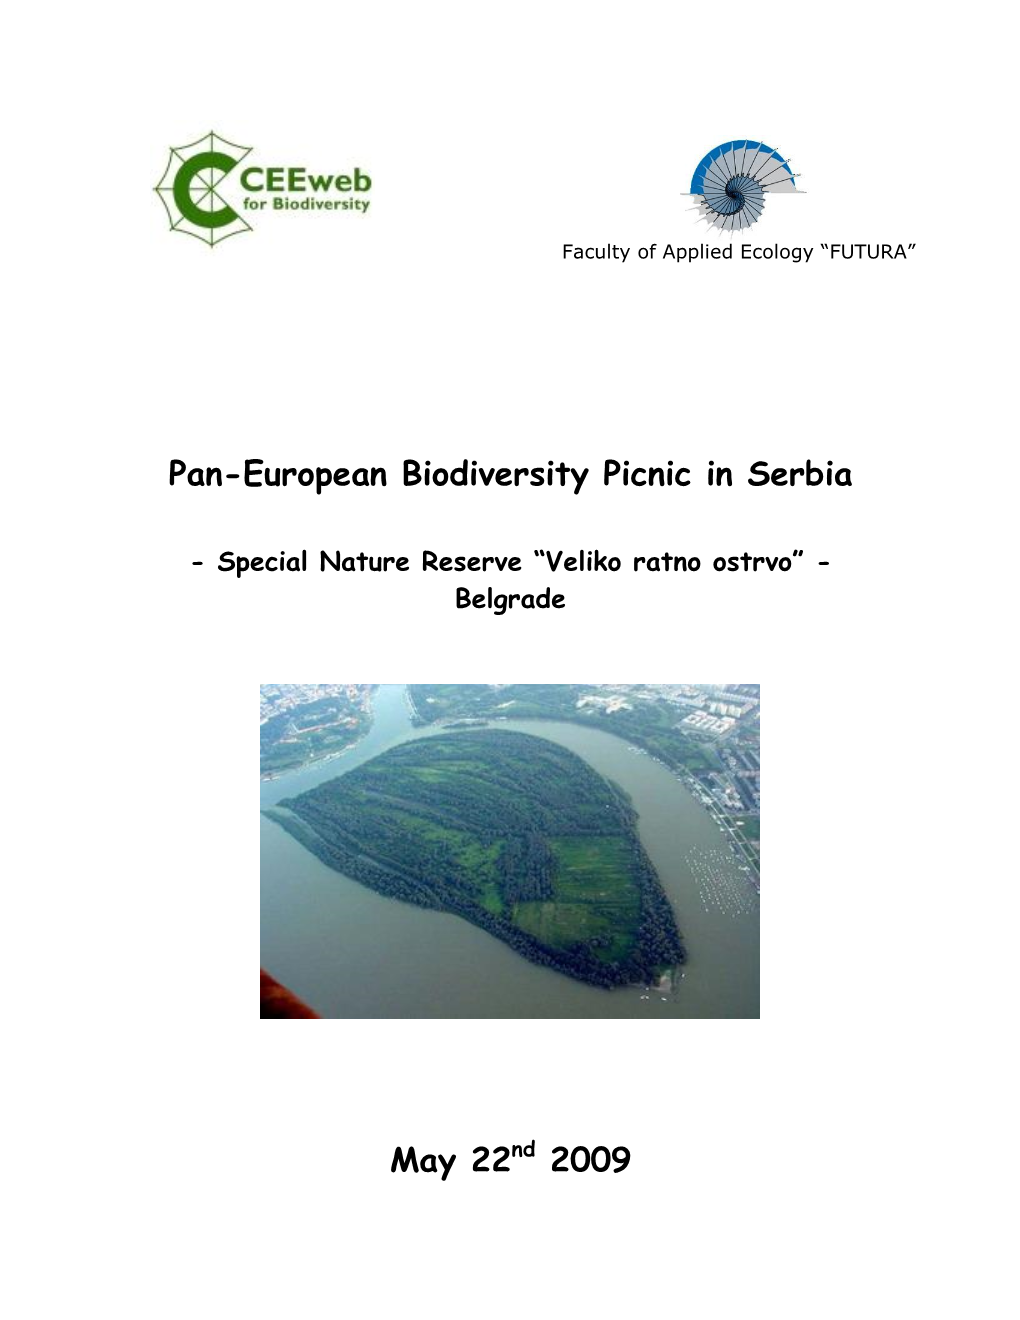 Pan-European Biodiversity Picnic in Serbia May 22Nd 2009